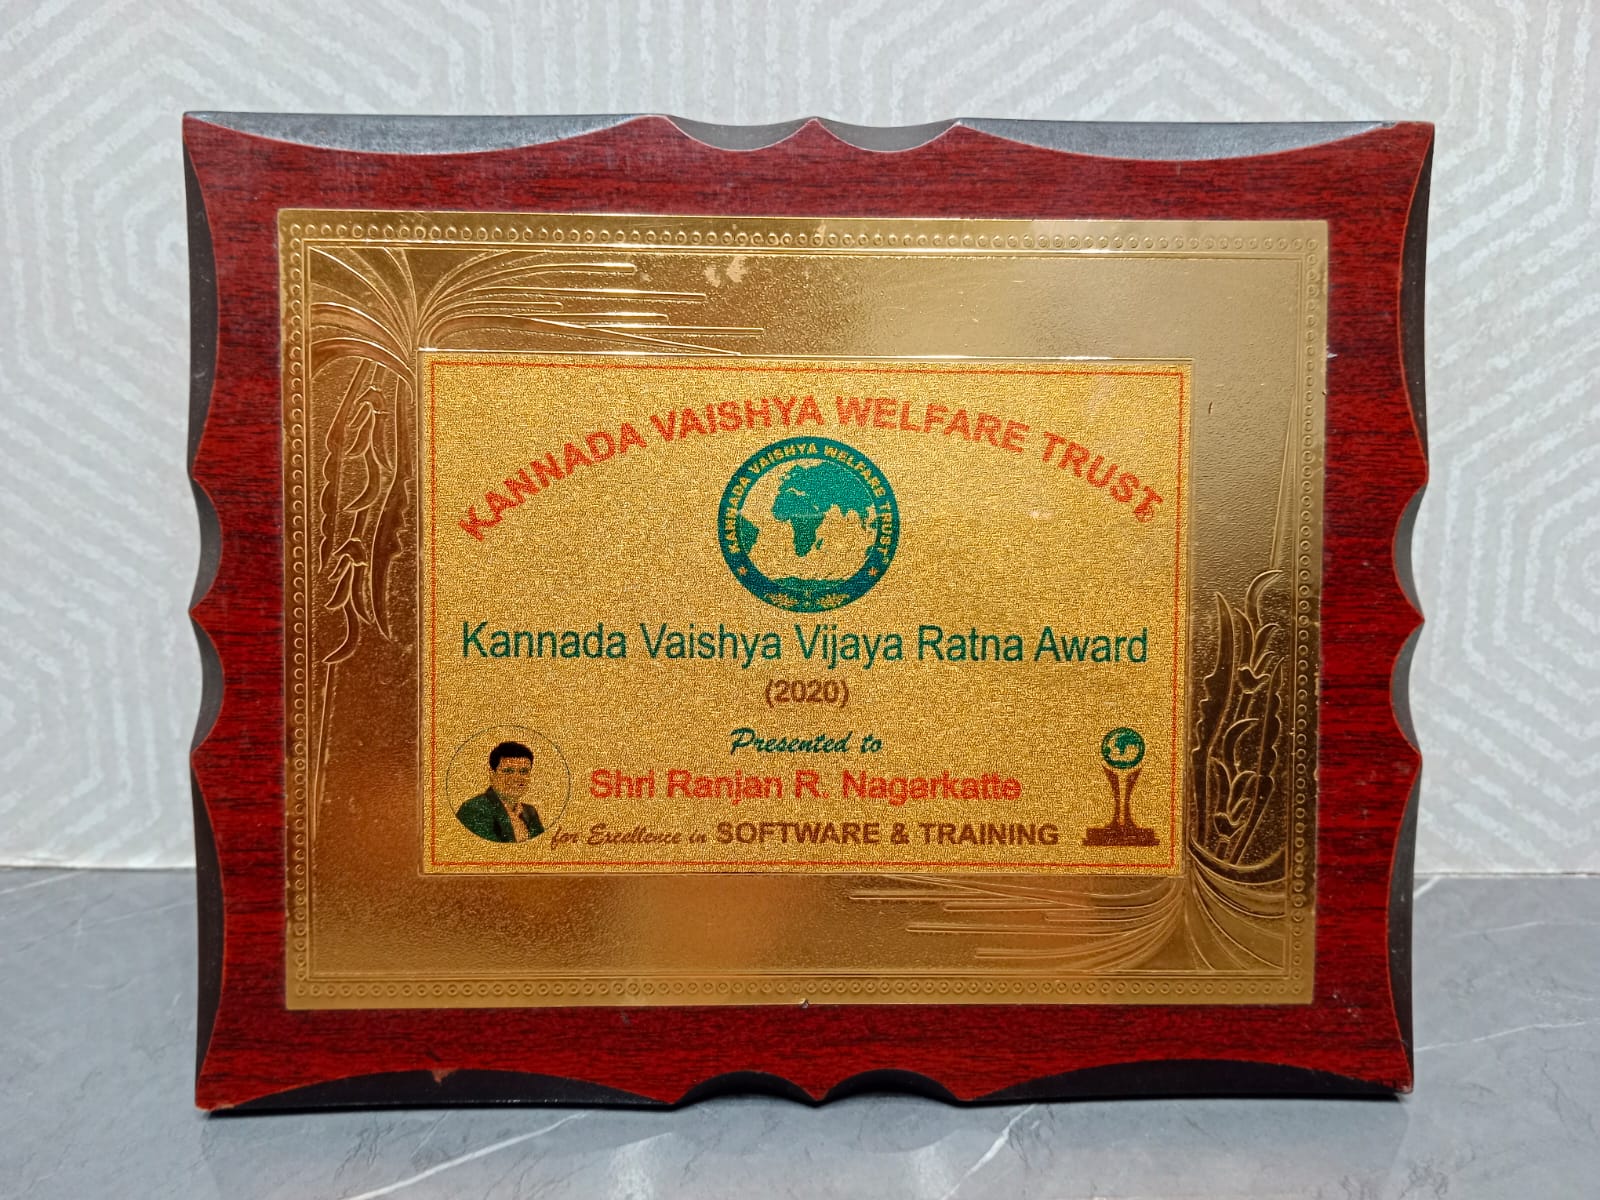 Kannada Vaishya Vijaya Ratna Award